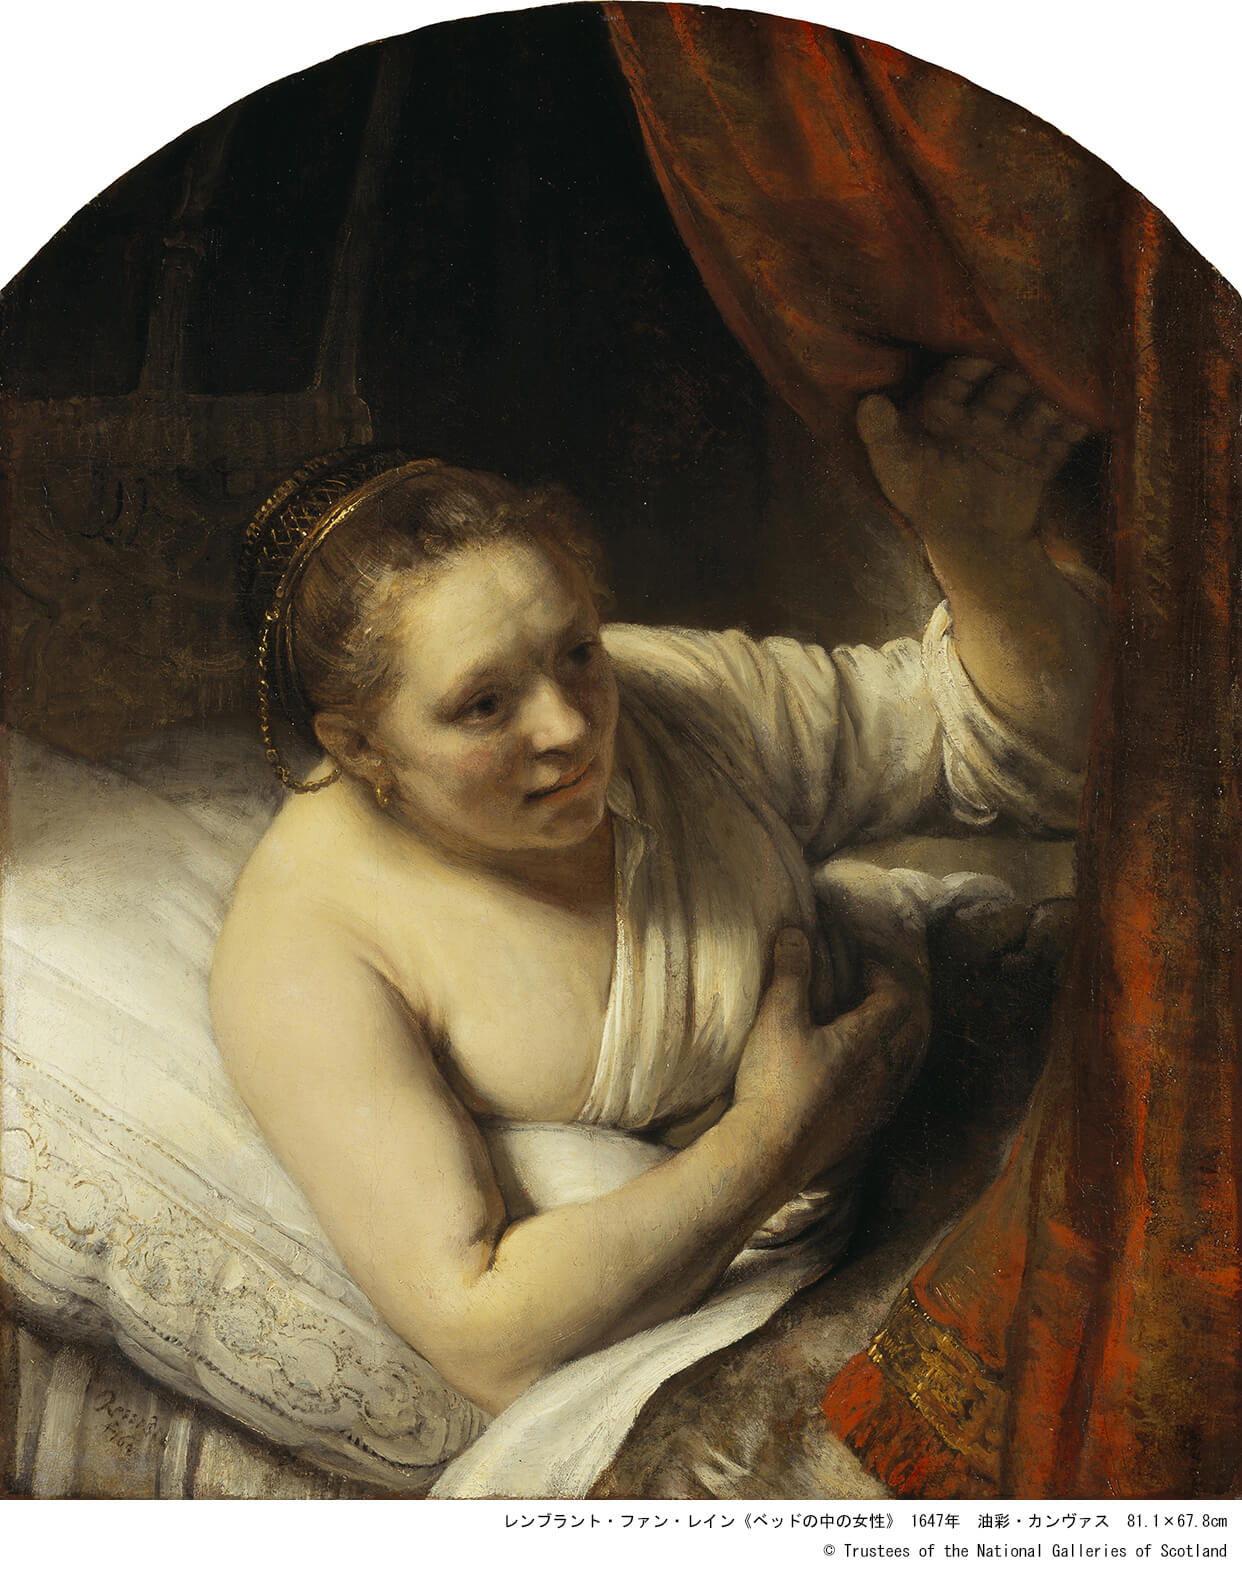 Rembrandt (Rembrandt van Rijn)